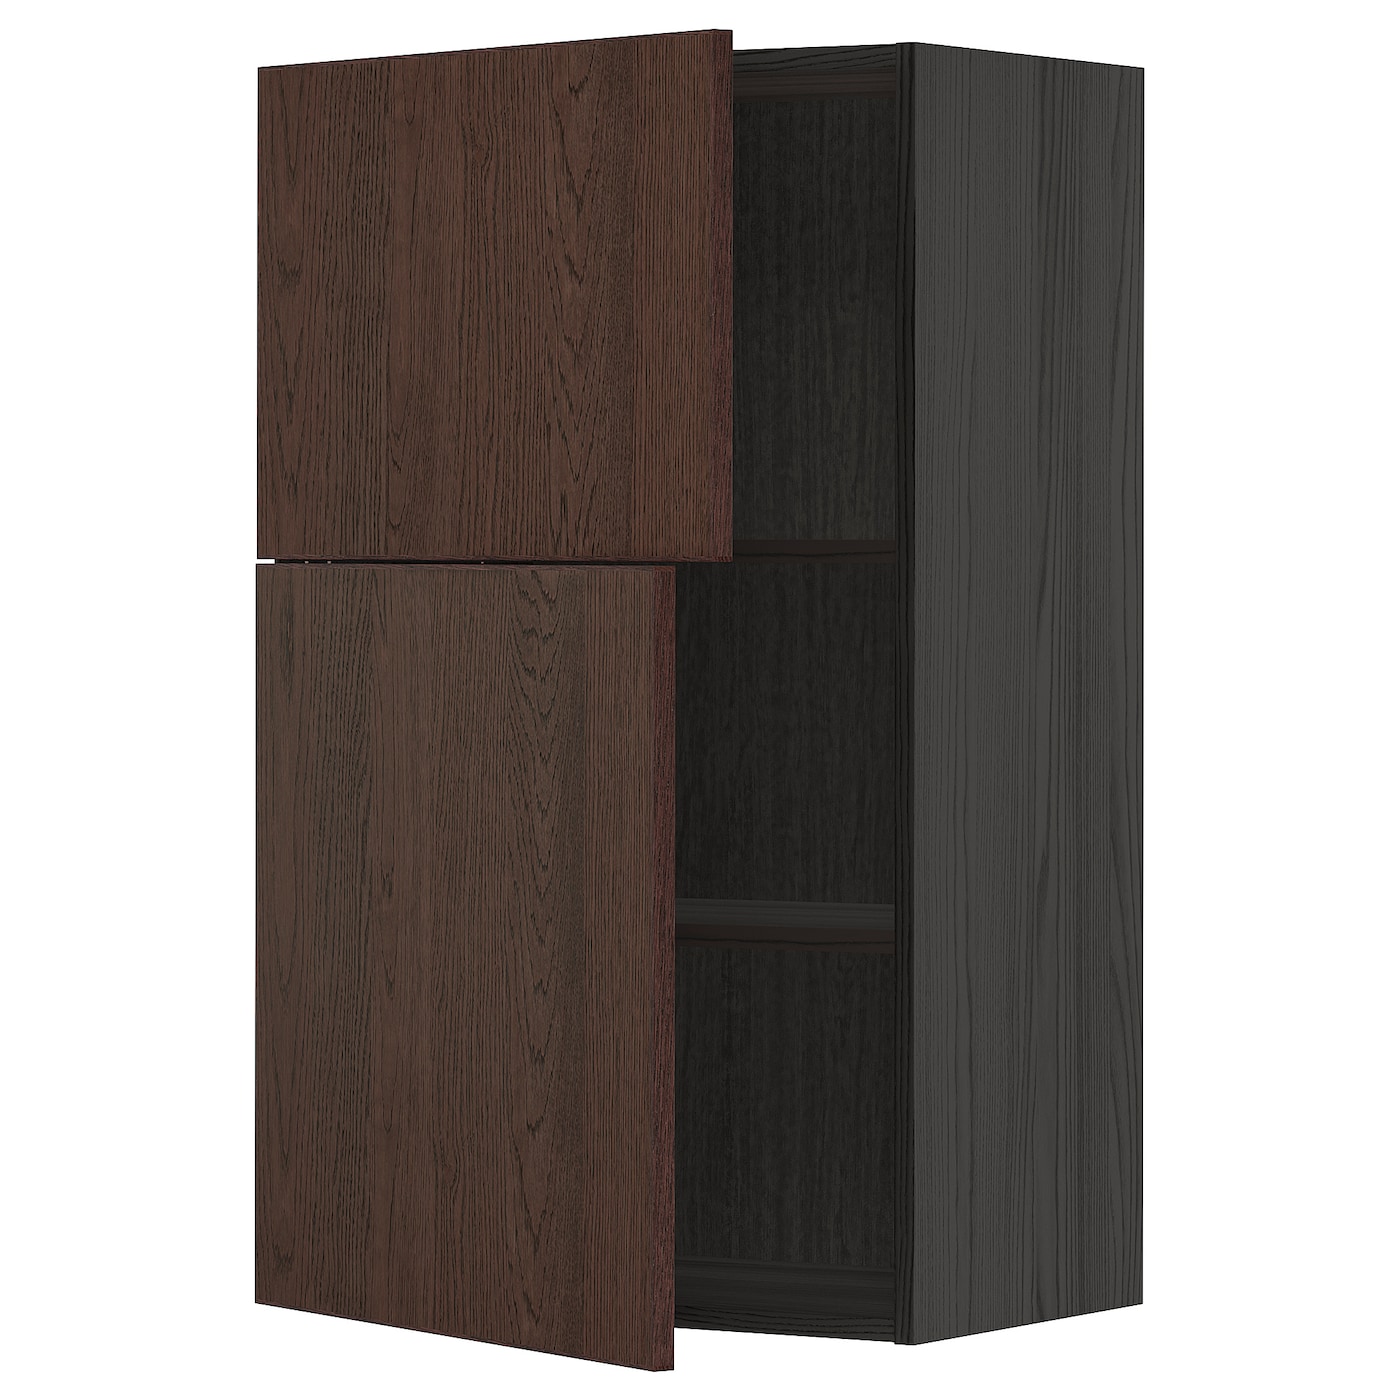 Навесной шкаф с полкой - METOD IKEA/ МЕТОД ИКЕА, 100х60 см,  черный/коричневый